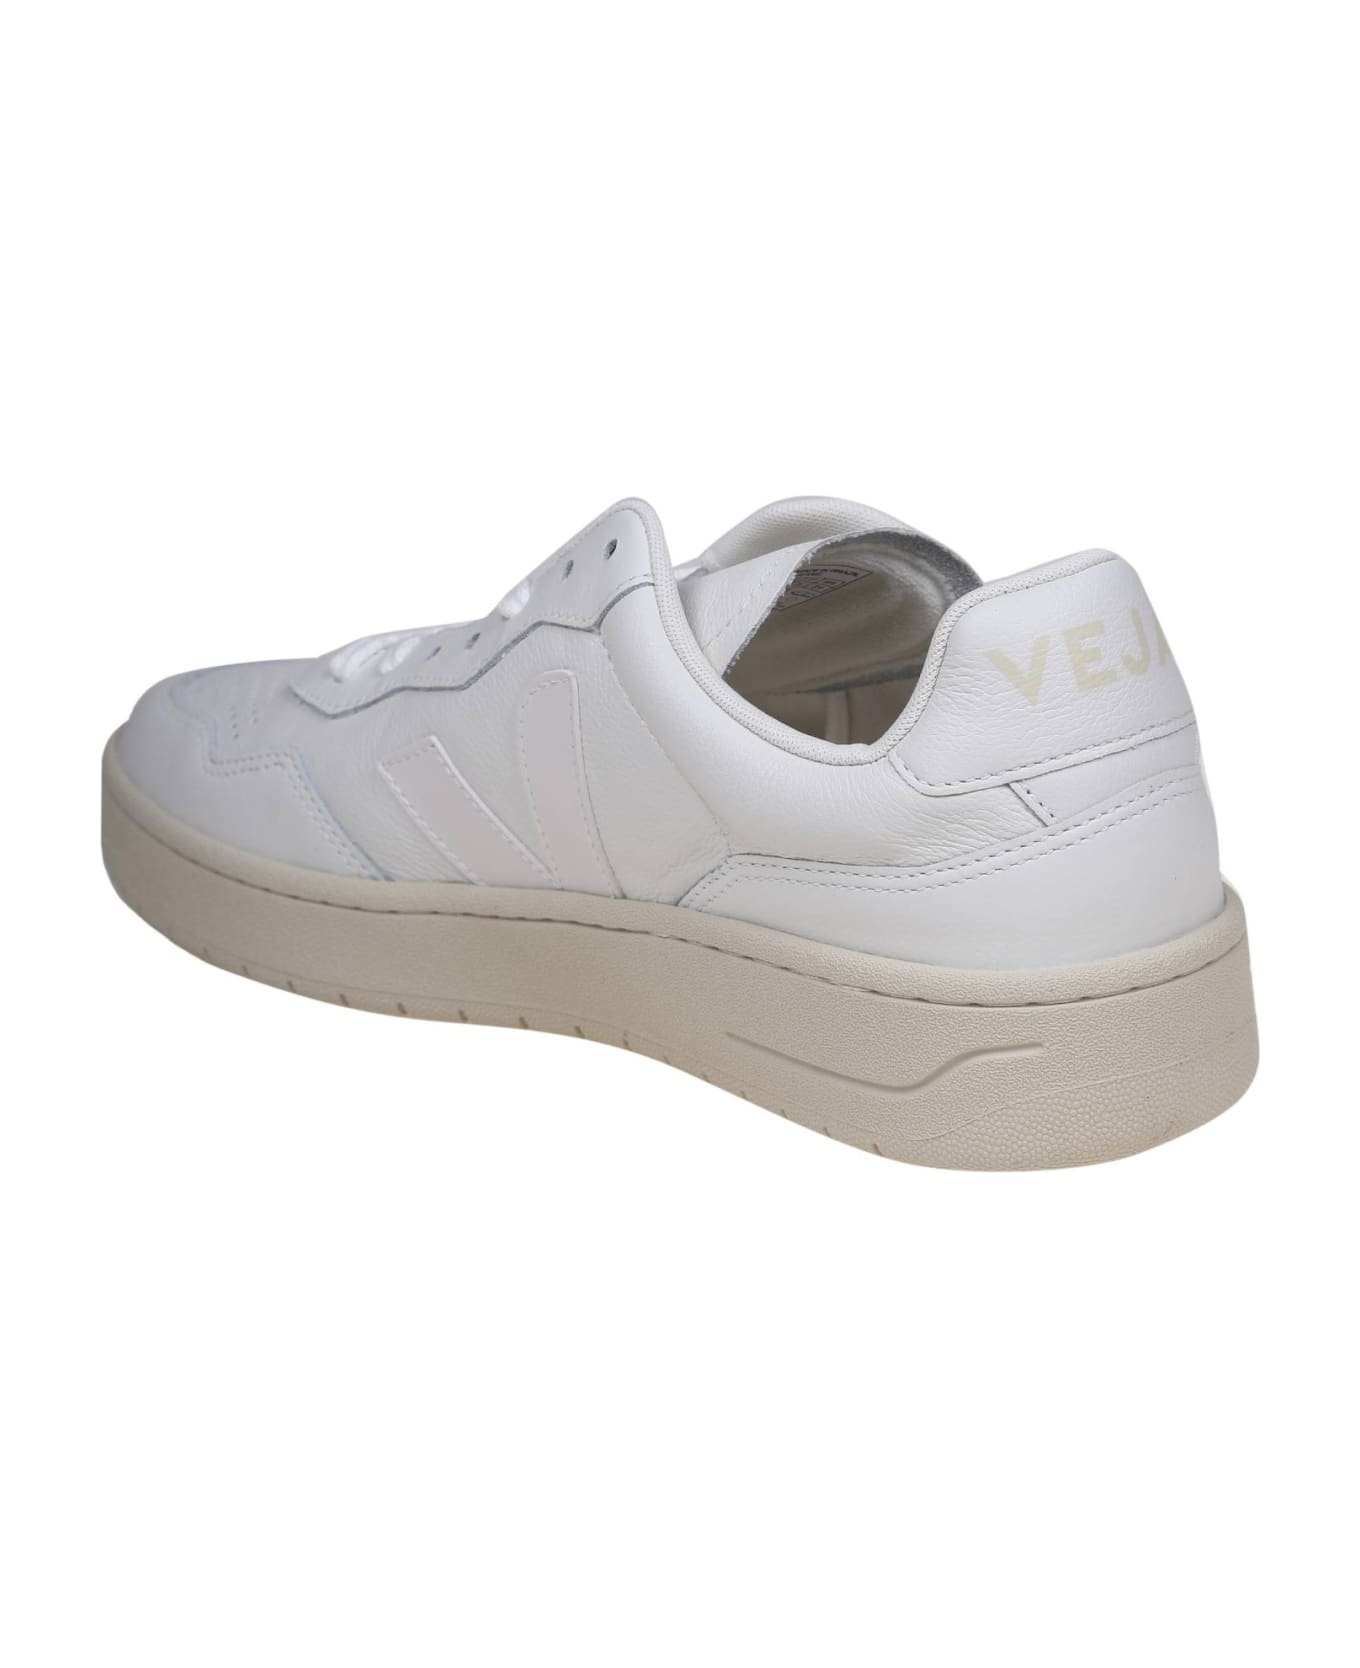 Veja V 90 Sneakers In White Leather